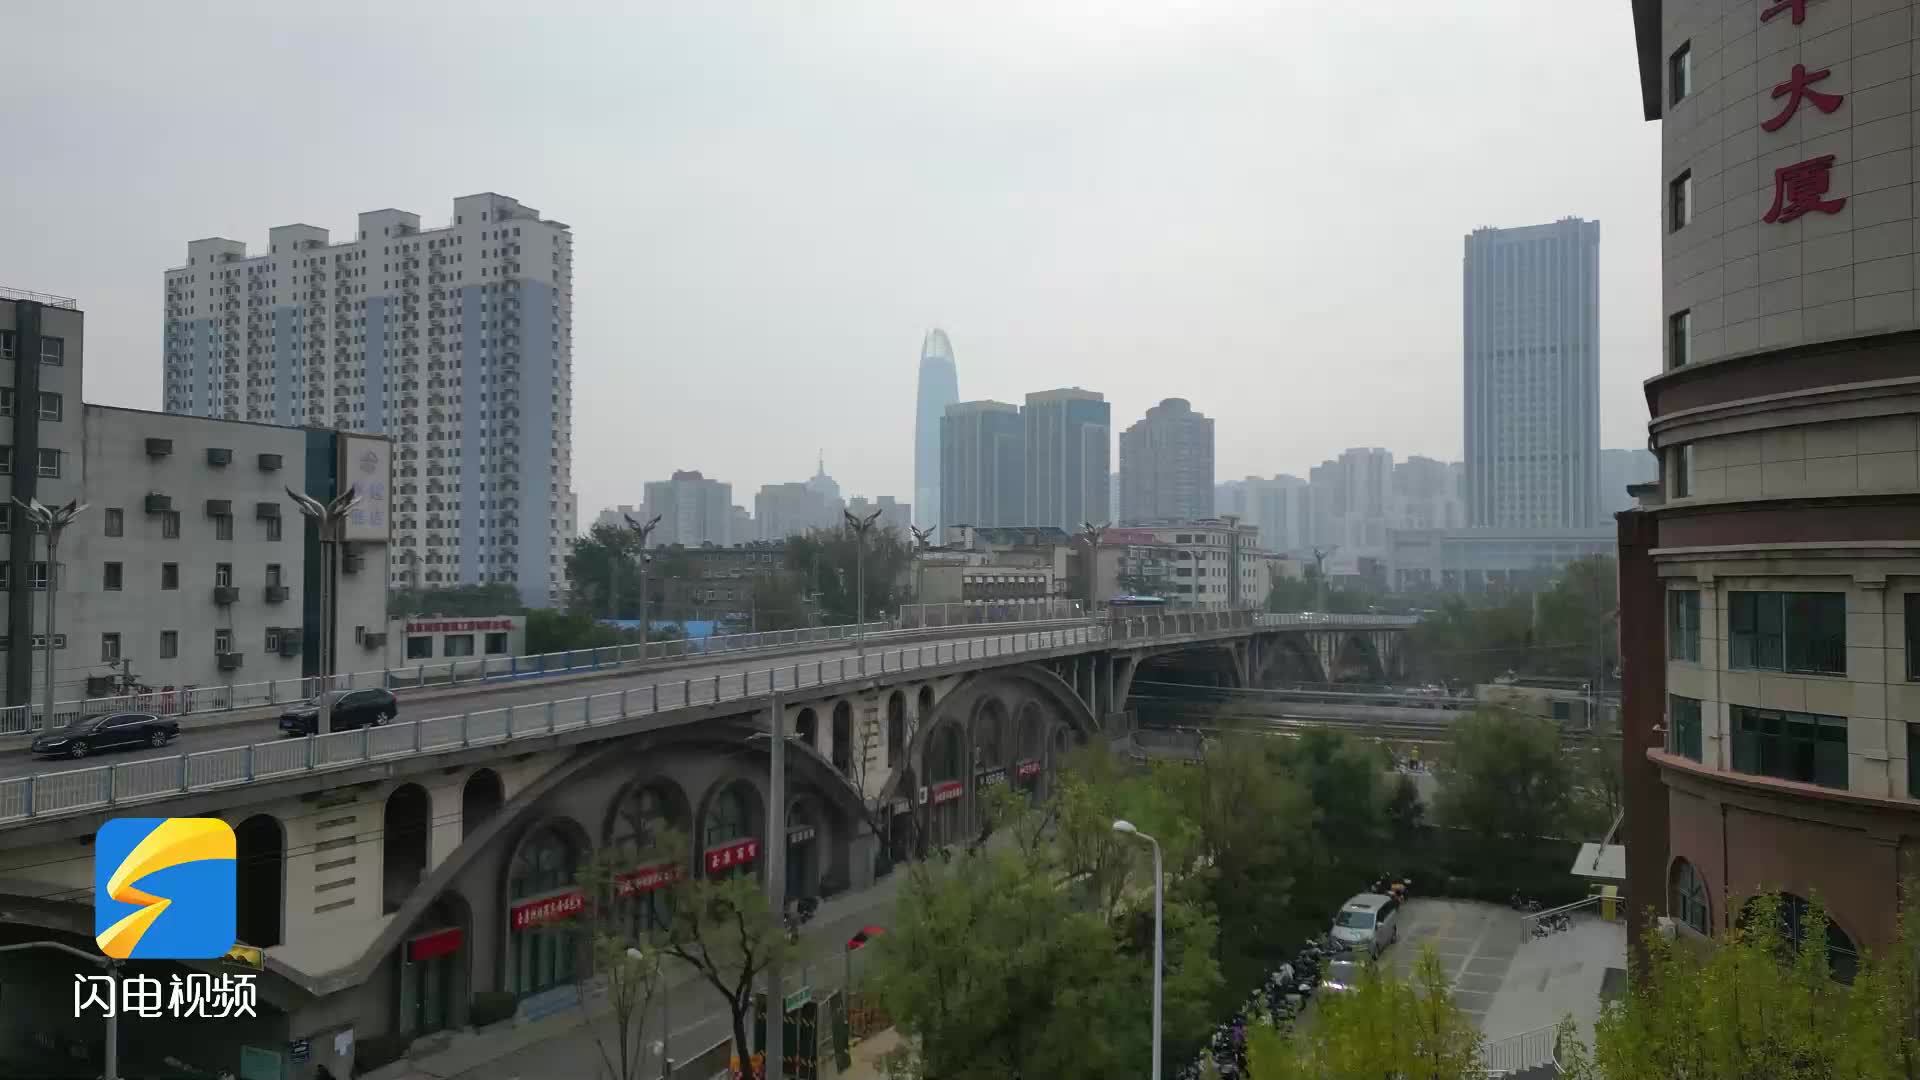 济南老天桥照片图片